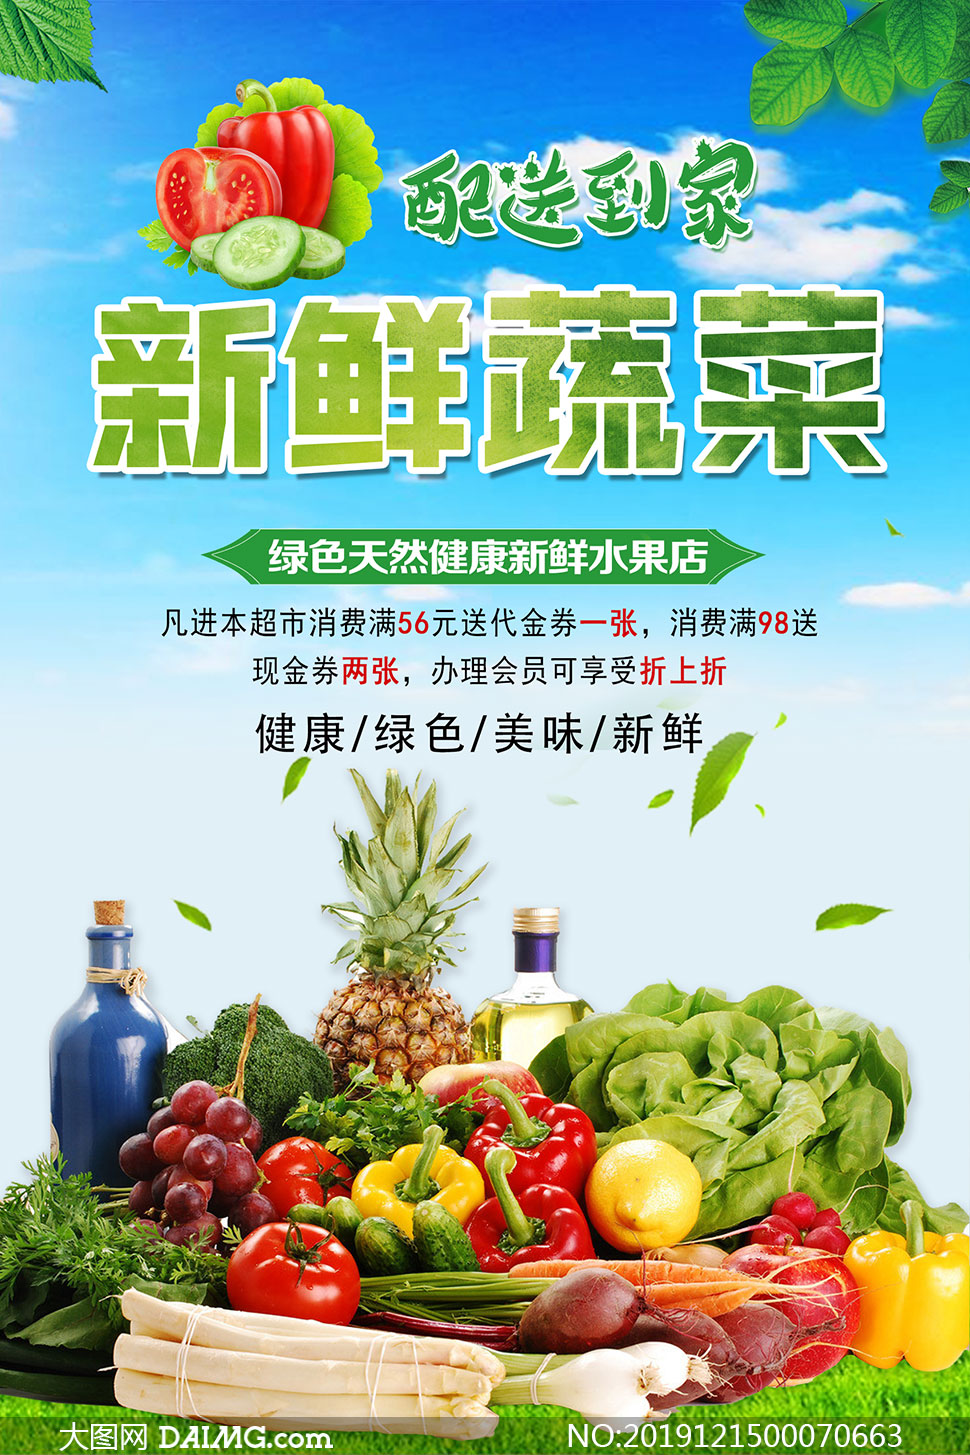 新鲜蔬菜配送宣传海报设计psd素材